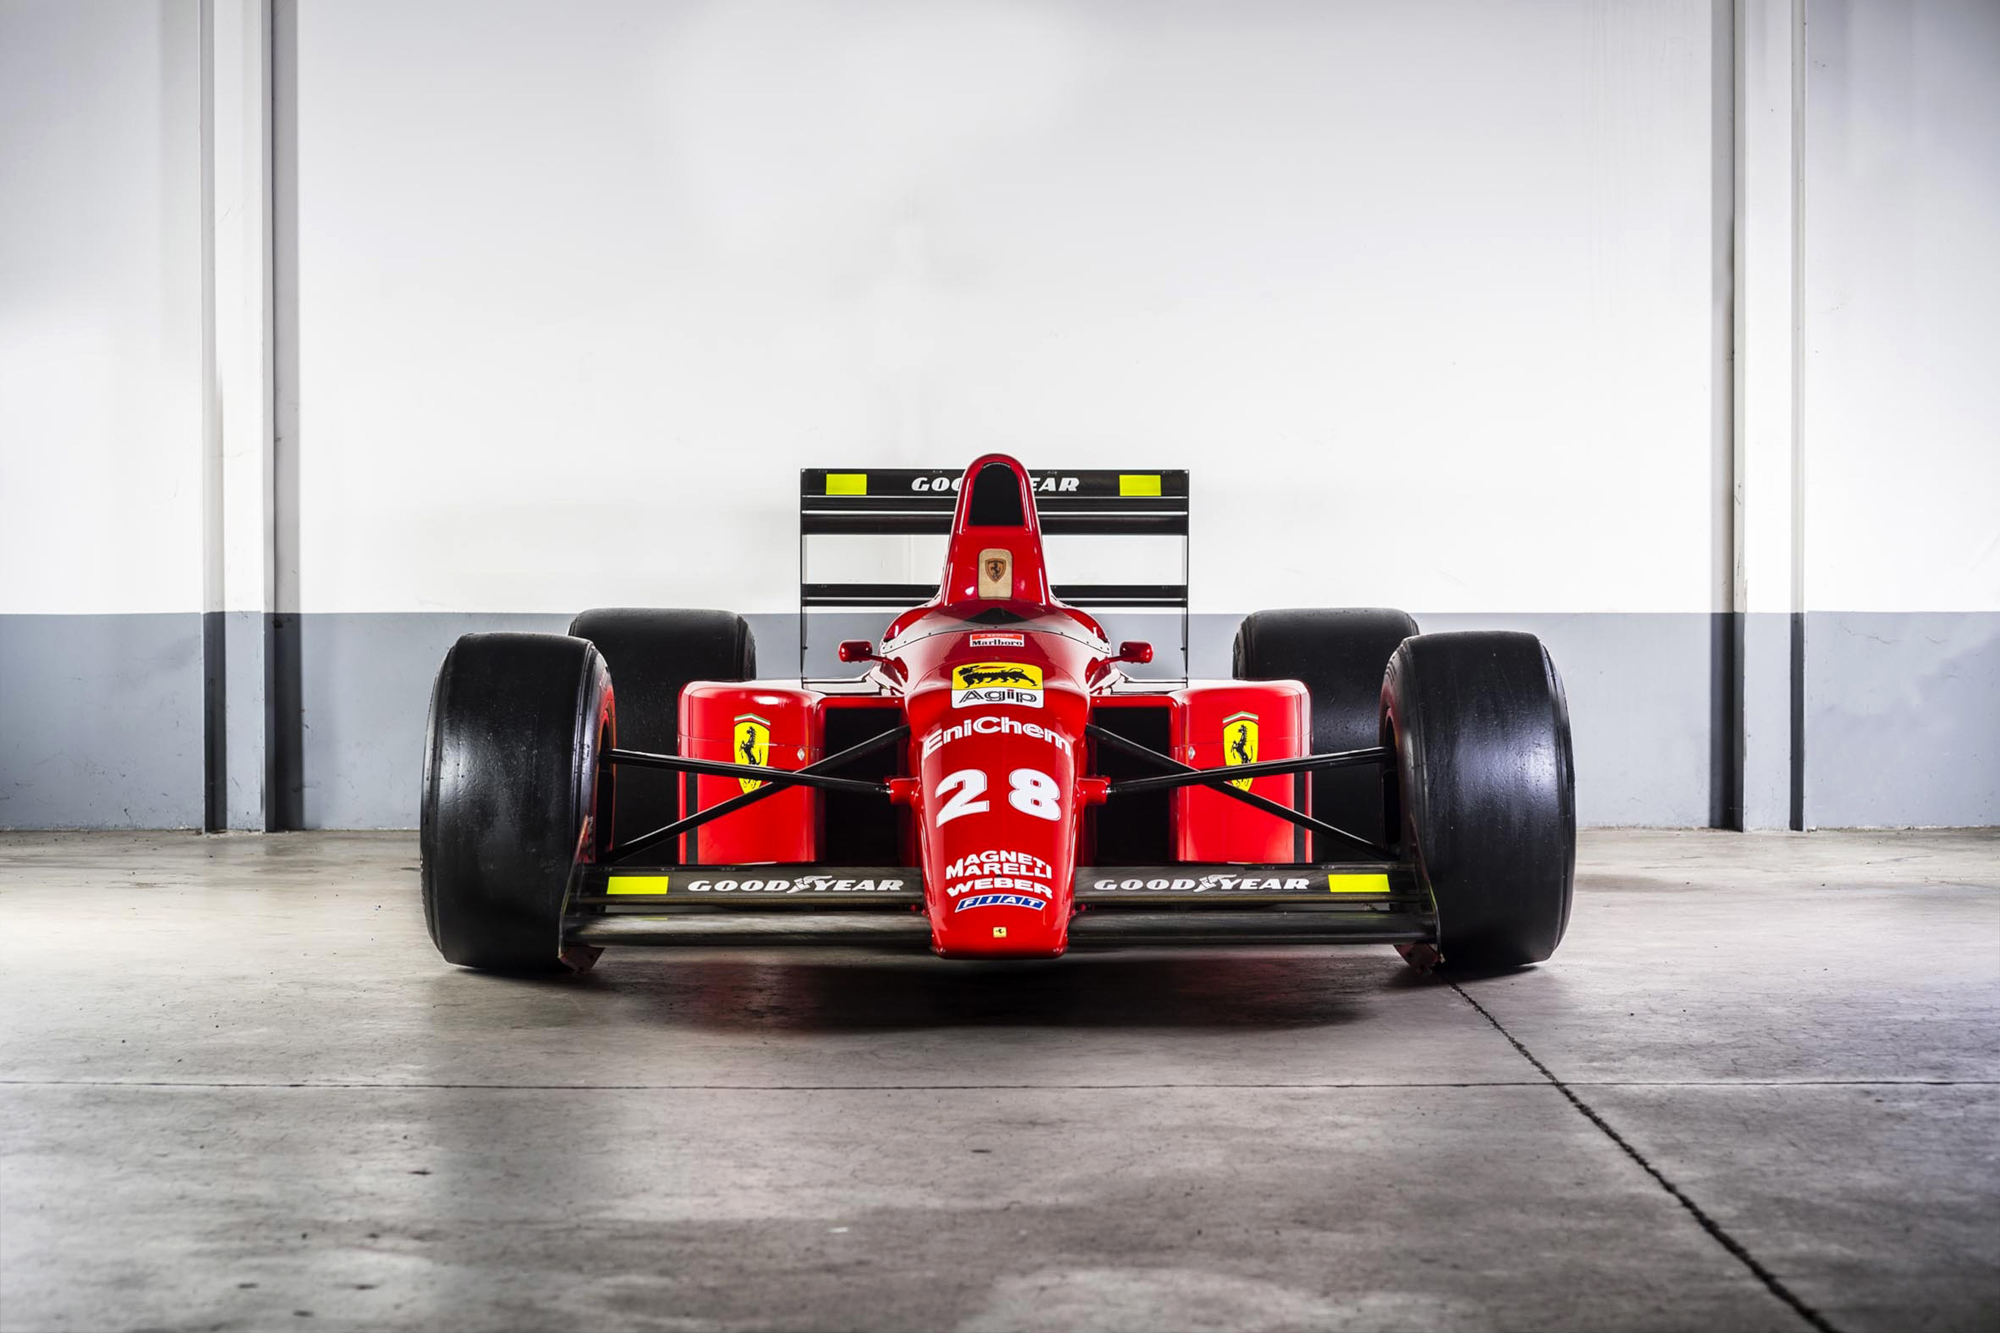 Melhores papéis de parede de Ferrari F1 89 para tela do telefone